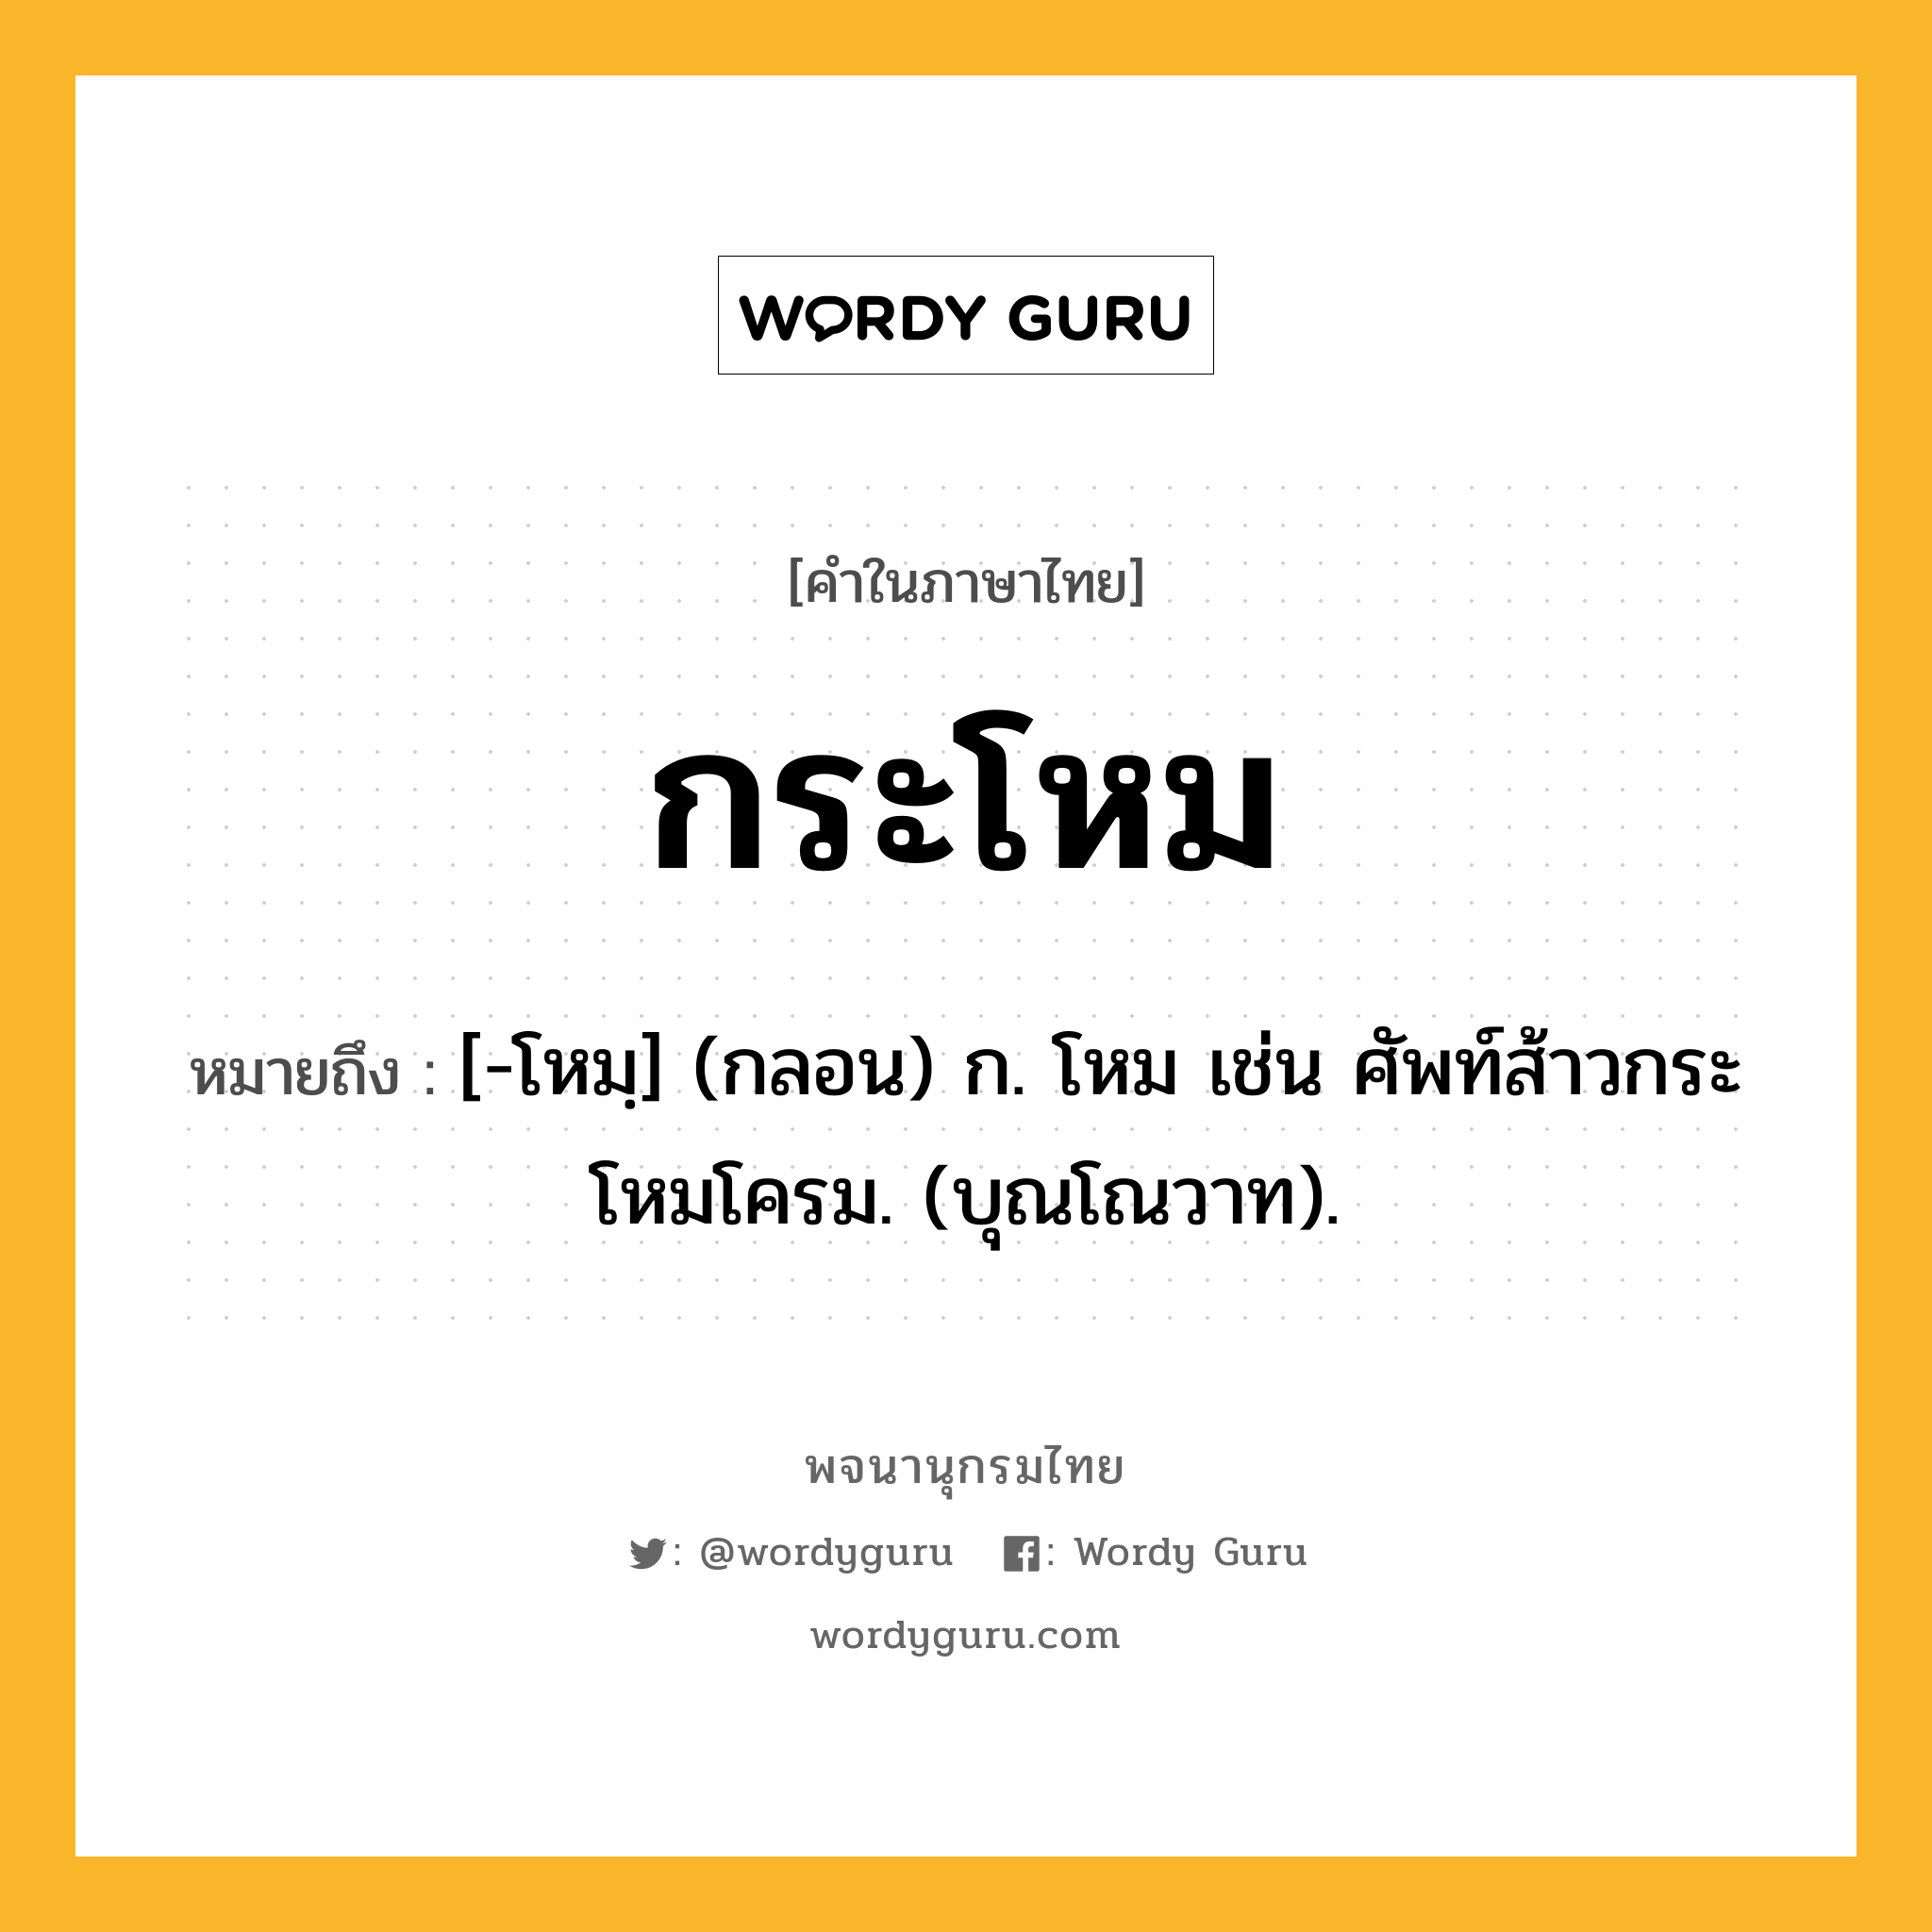 กระโหม หมายถึงอะไร?, คำในภาษาไทย กระโหม หมายถึง [-โหมฺ] (กลอน) ก. โหม เช่น ศัพท์ส้าวกระโหมโครม. (บุณโณวาท).